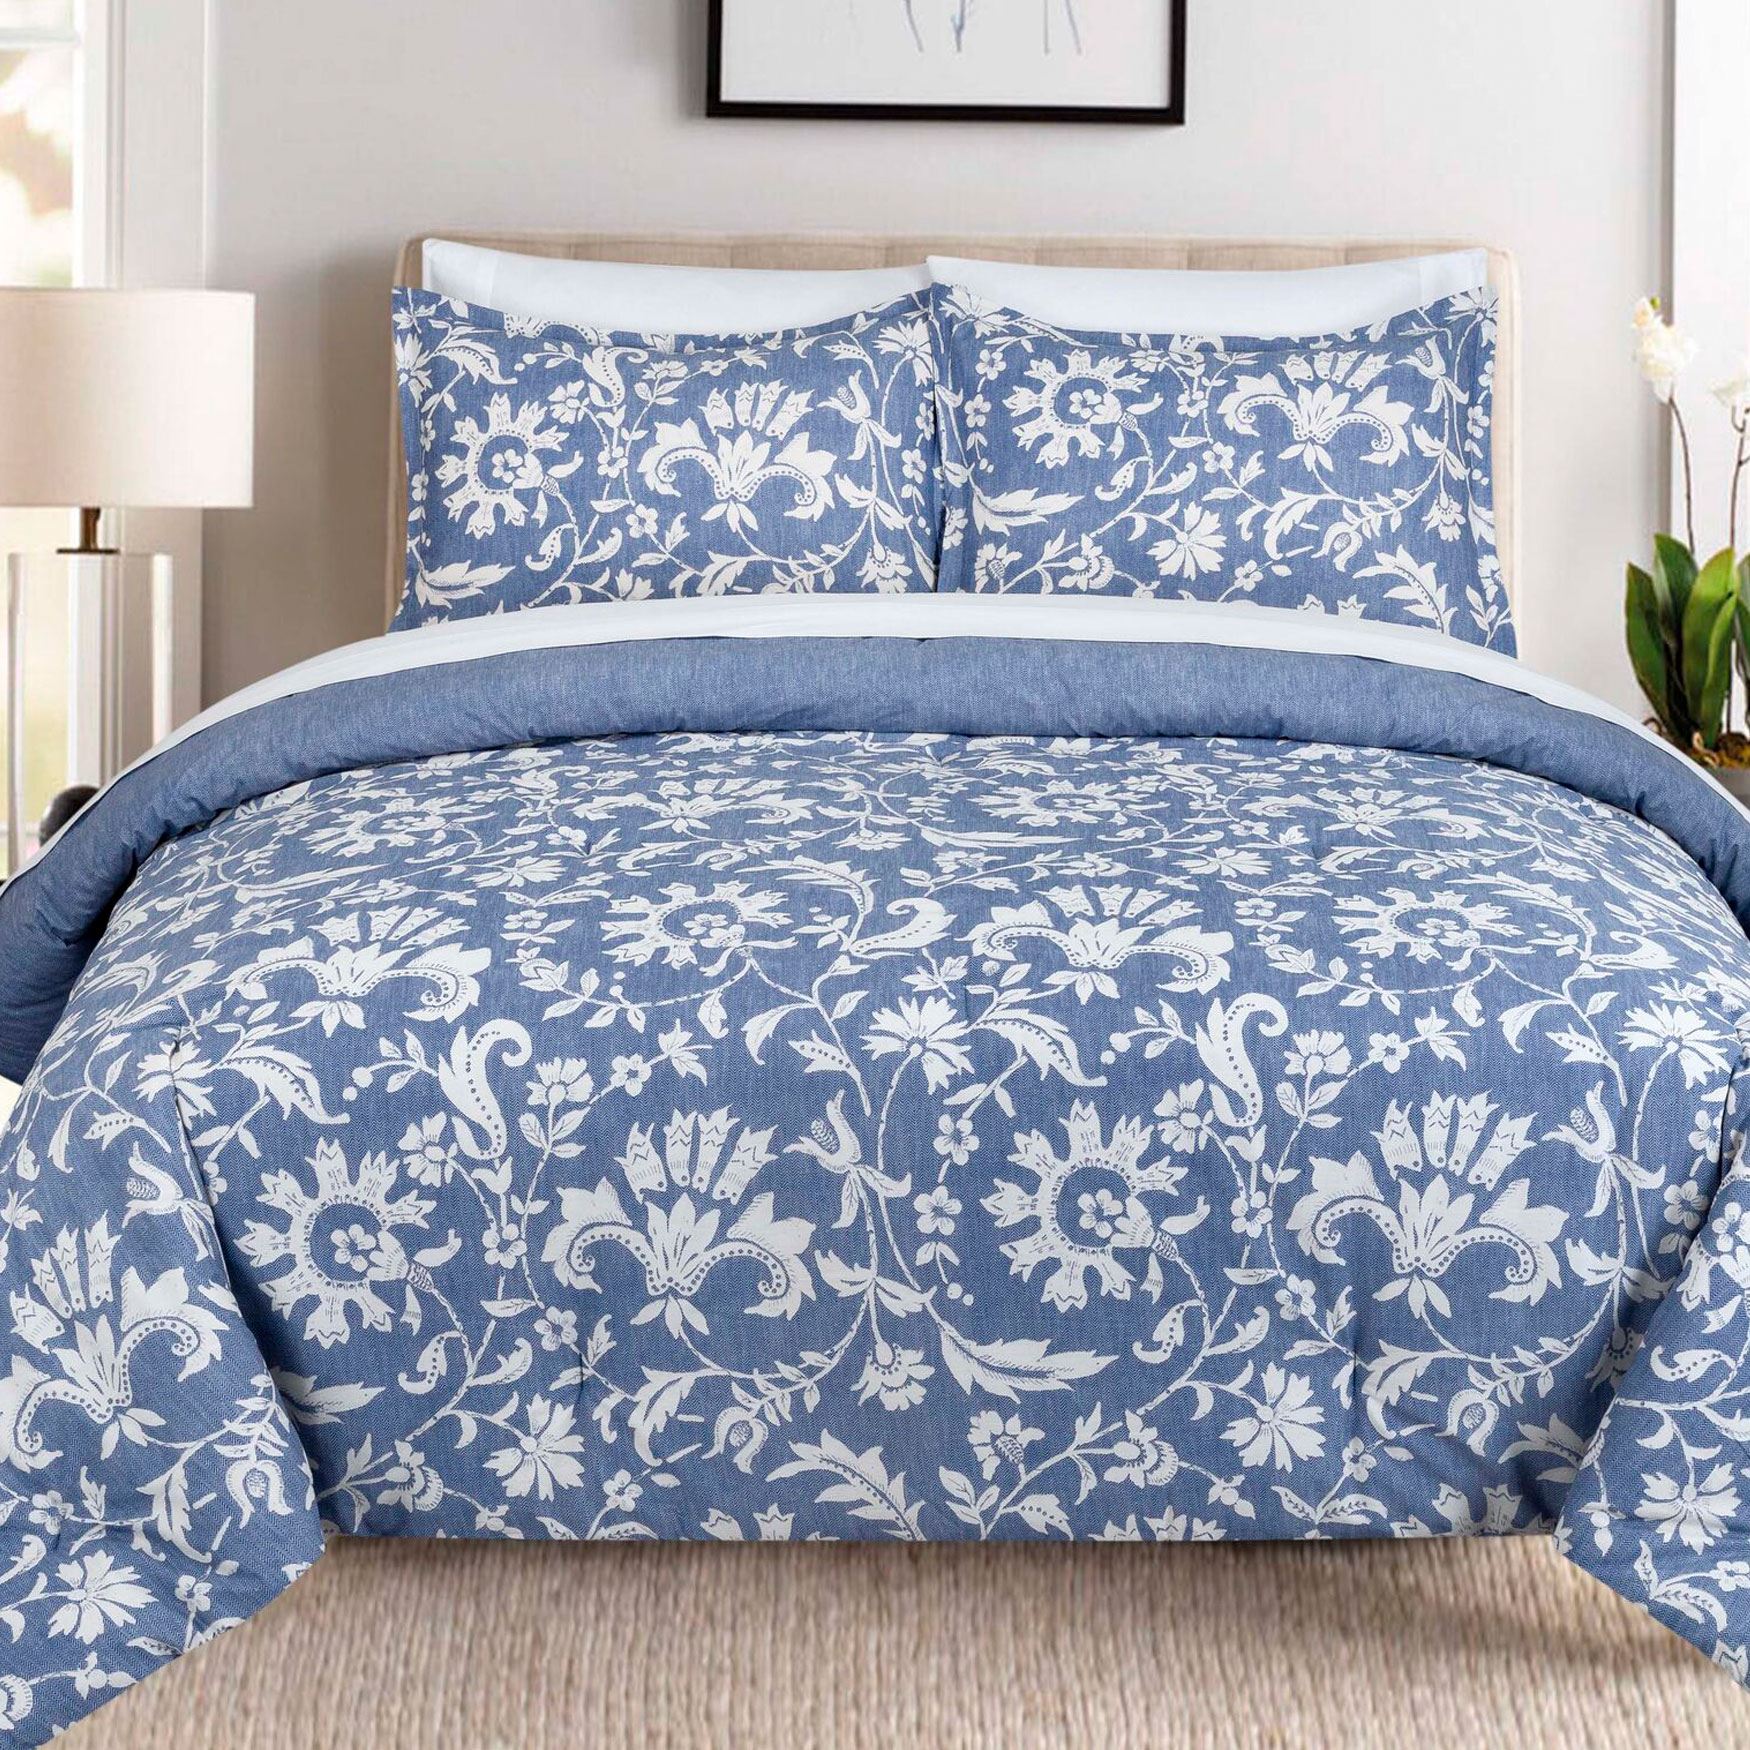 Porcelain Comforter Set Plus Size Bedding Brylane Home 